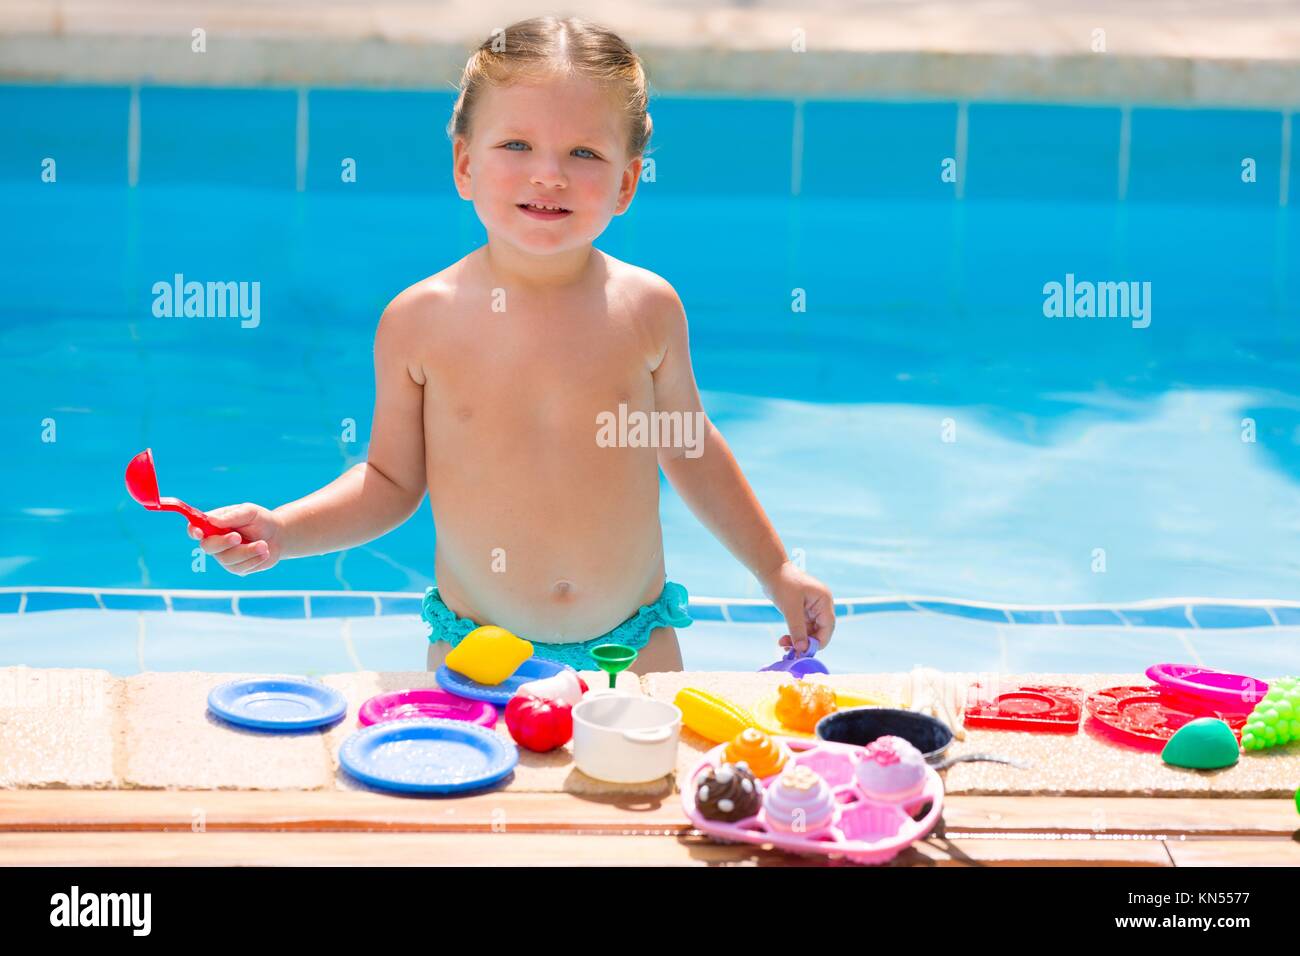 Kleinkind Kind Mädchen mit Essen spielen Spielzeug im Schwimmbad im Sommer  Urlaub Stockfotografie - Alamy